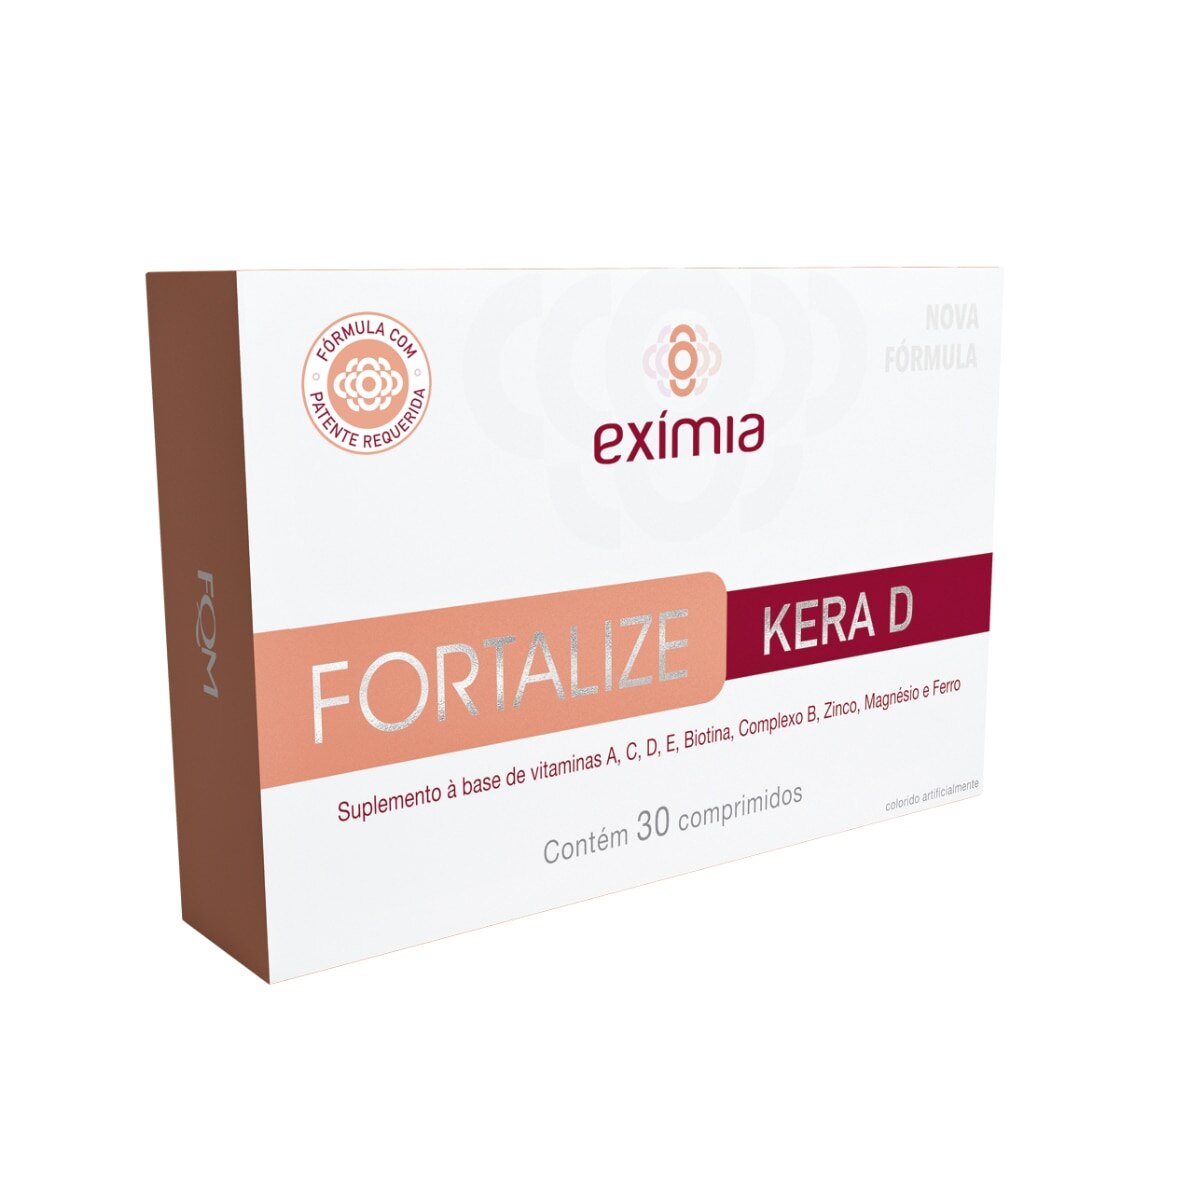 Eximia Fortalize Kera D 30 Comprimidos